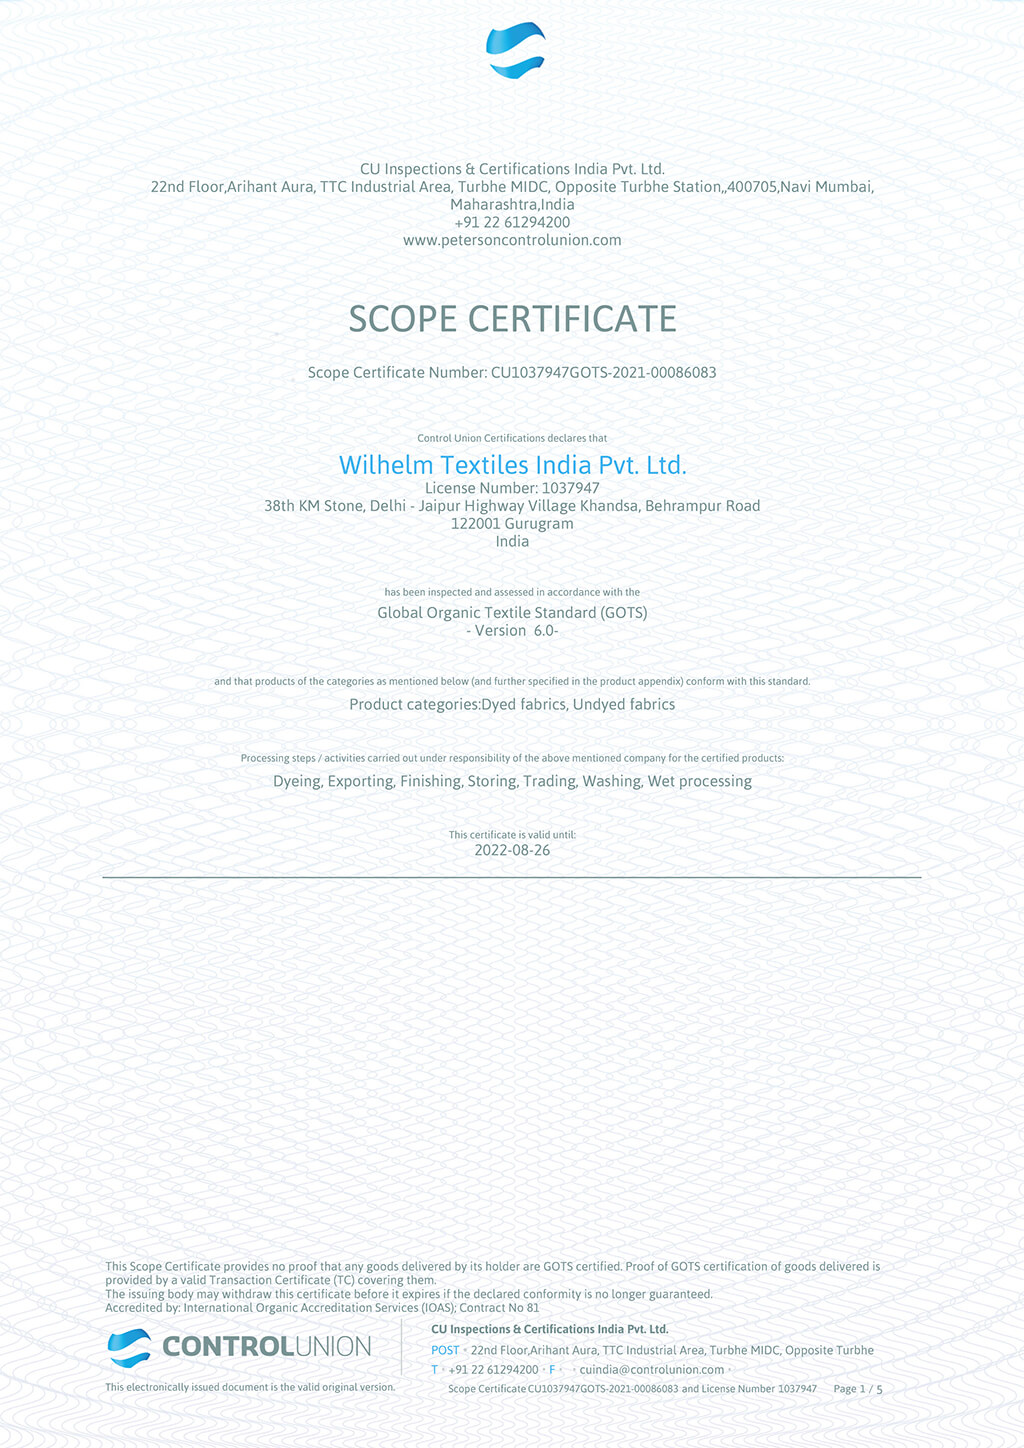 GOTS Scope Certificate